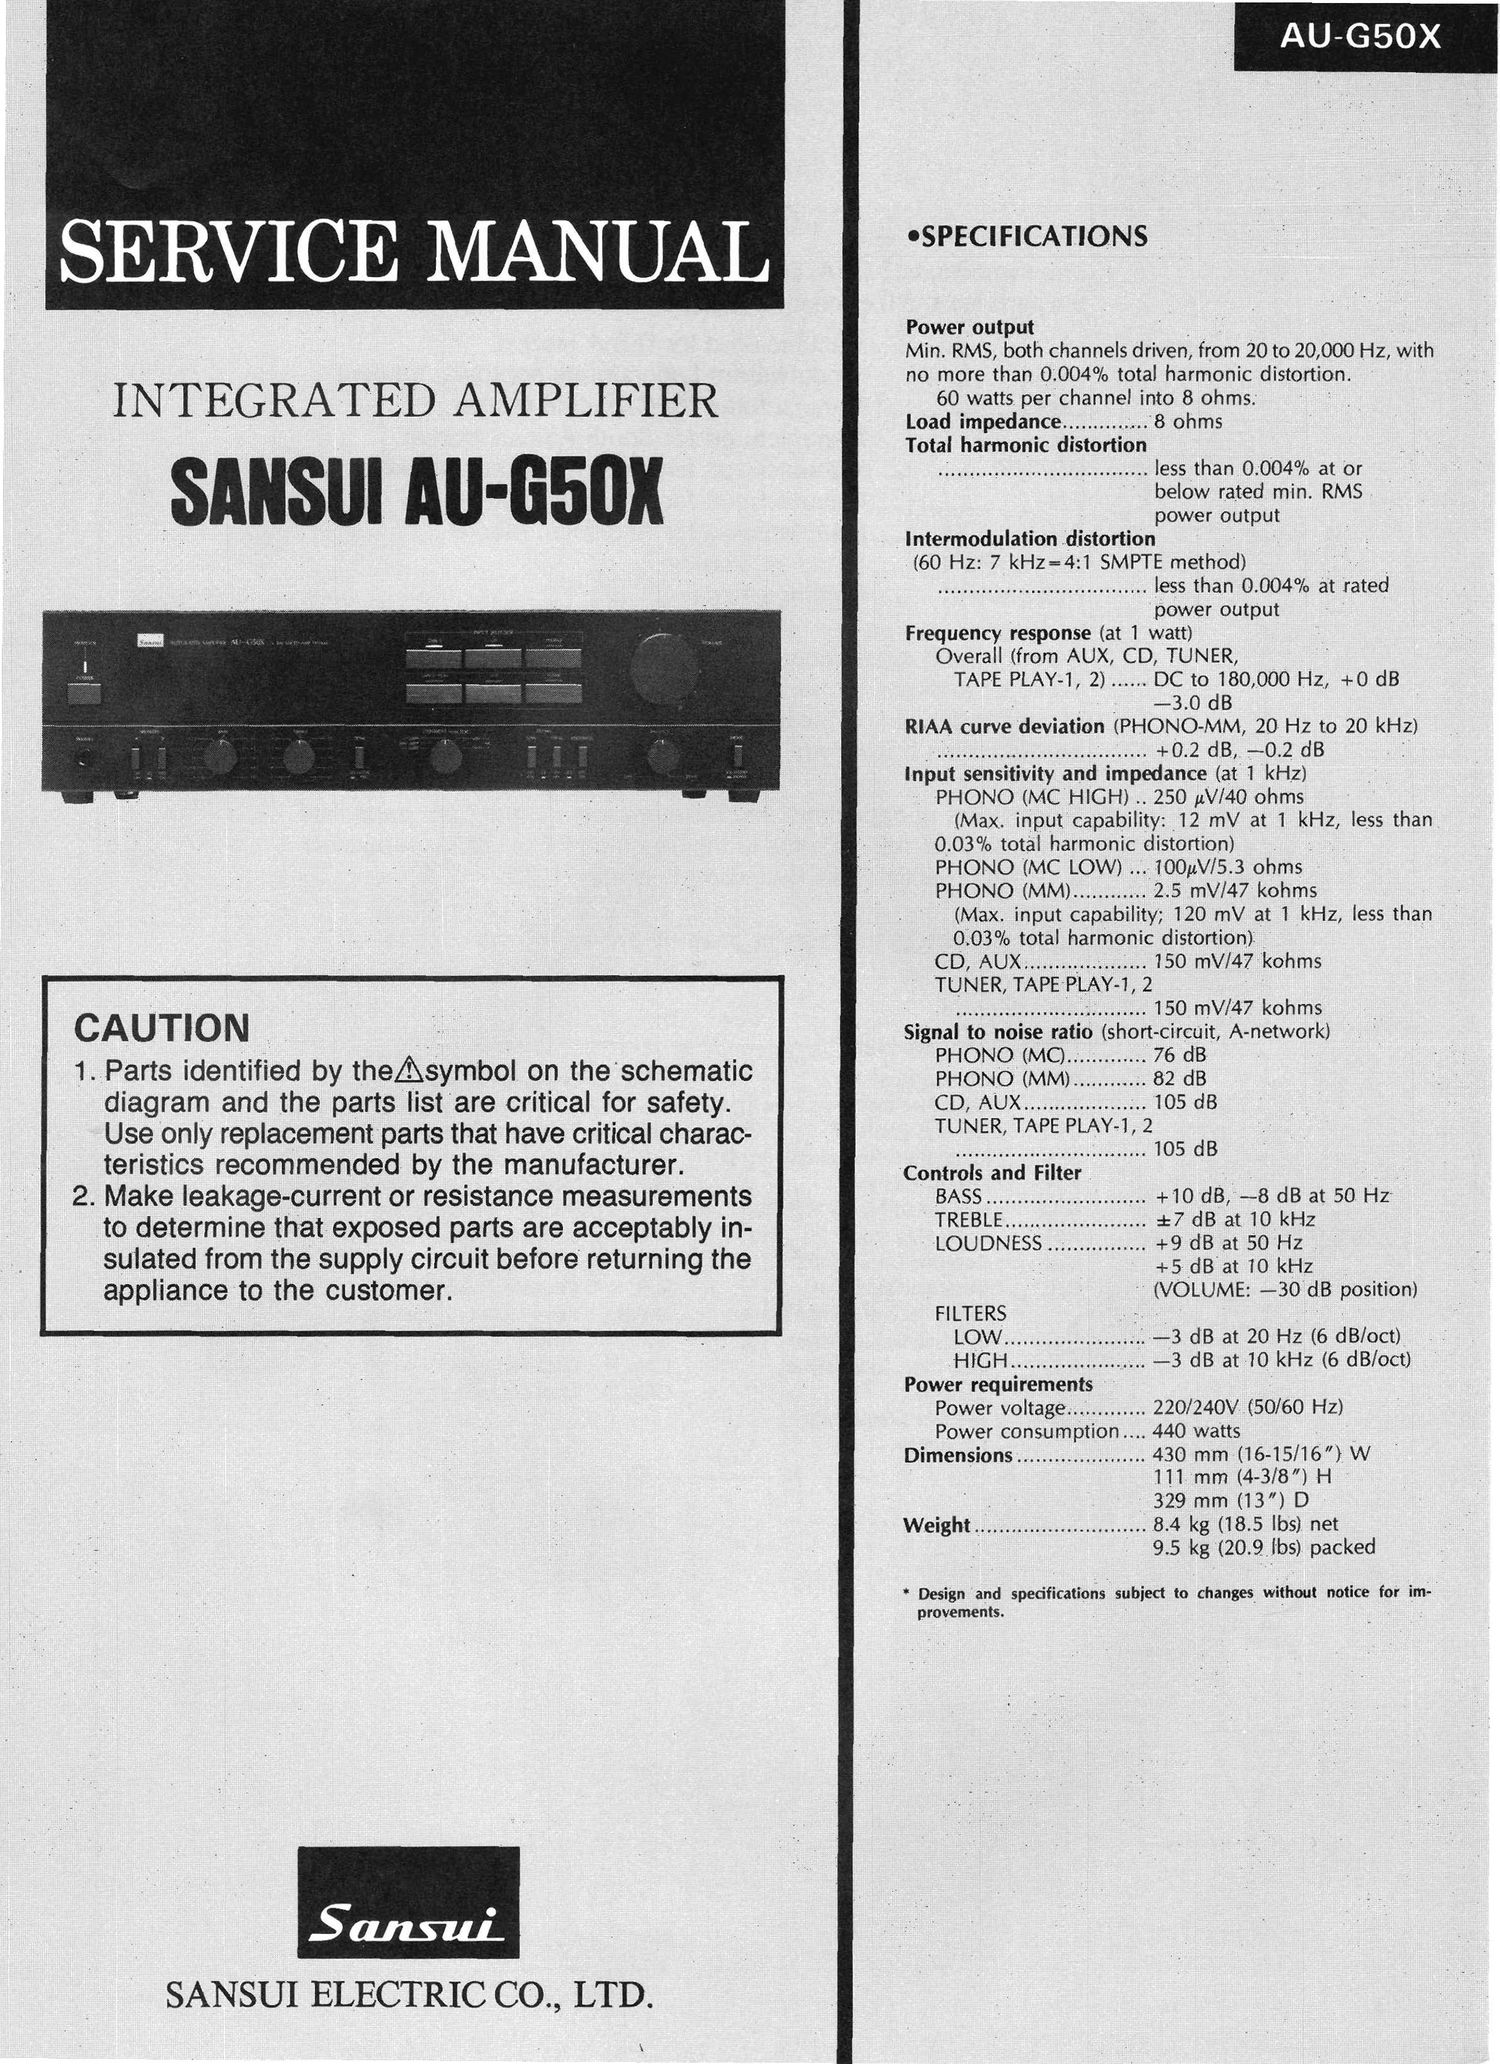 Sansui AUG 50 X Service Manual